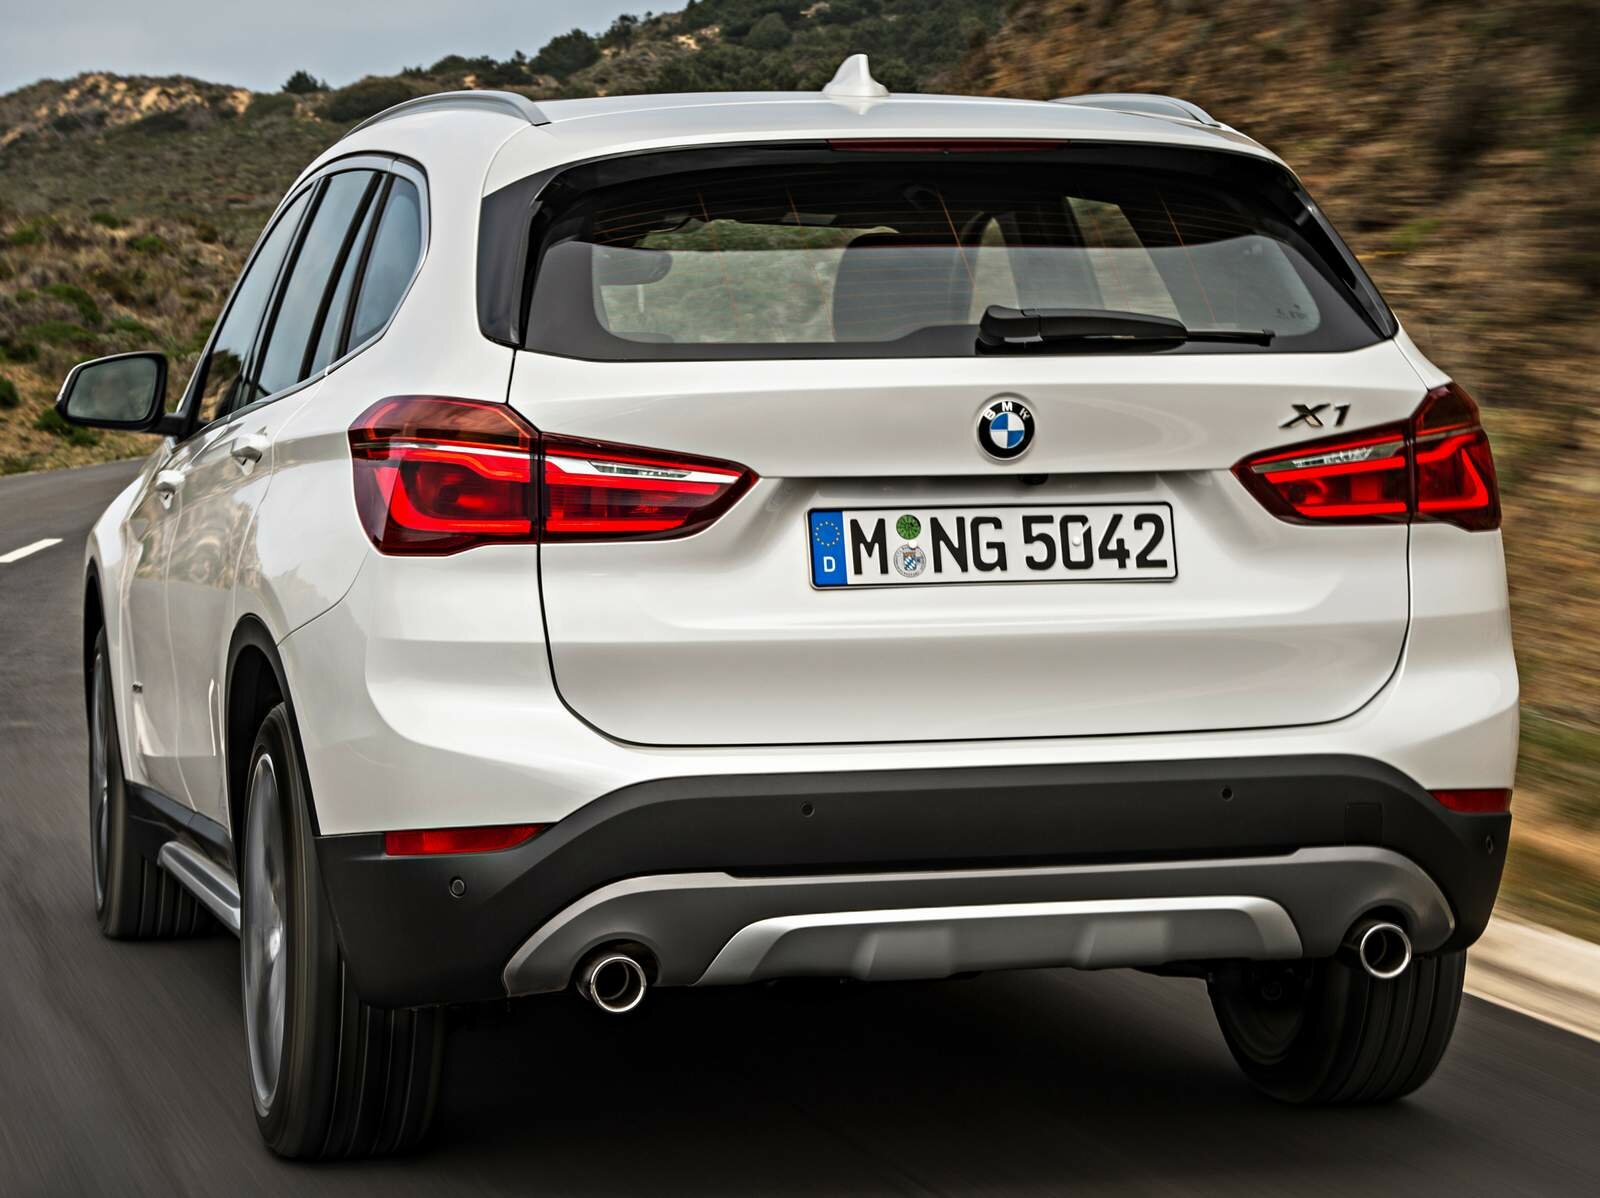 Nova geração da BMW X1 será lançada no Brasil em março